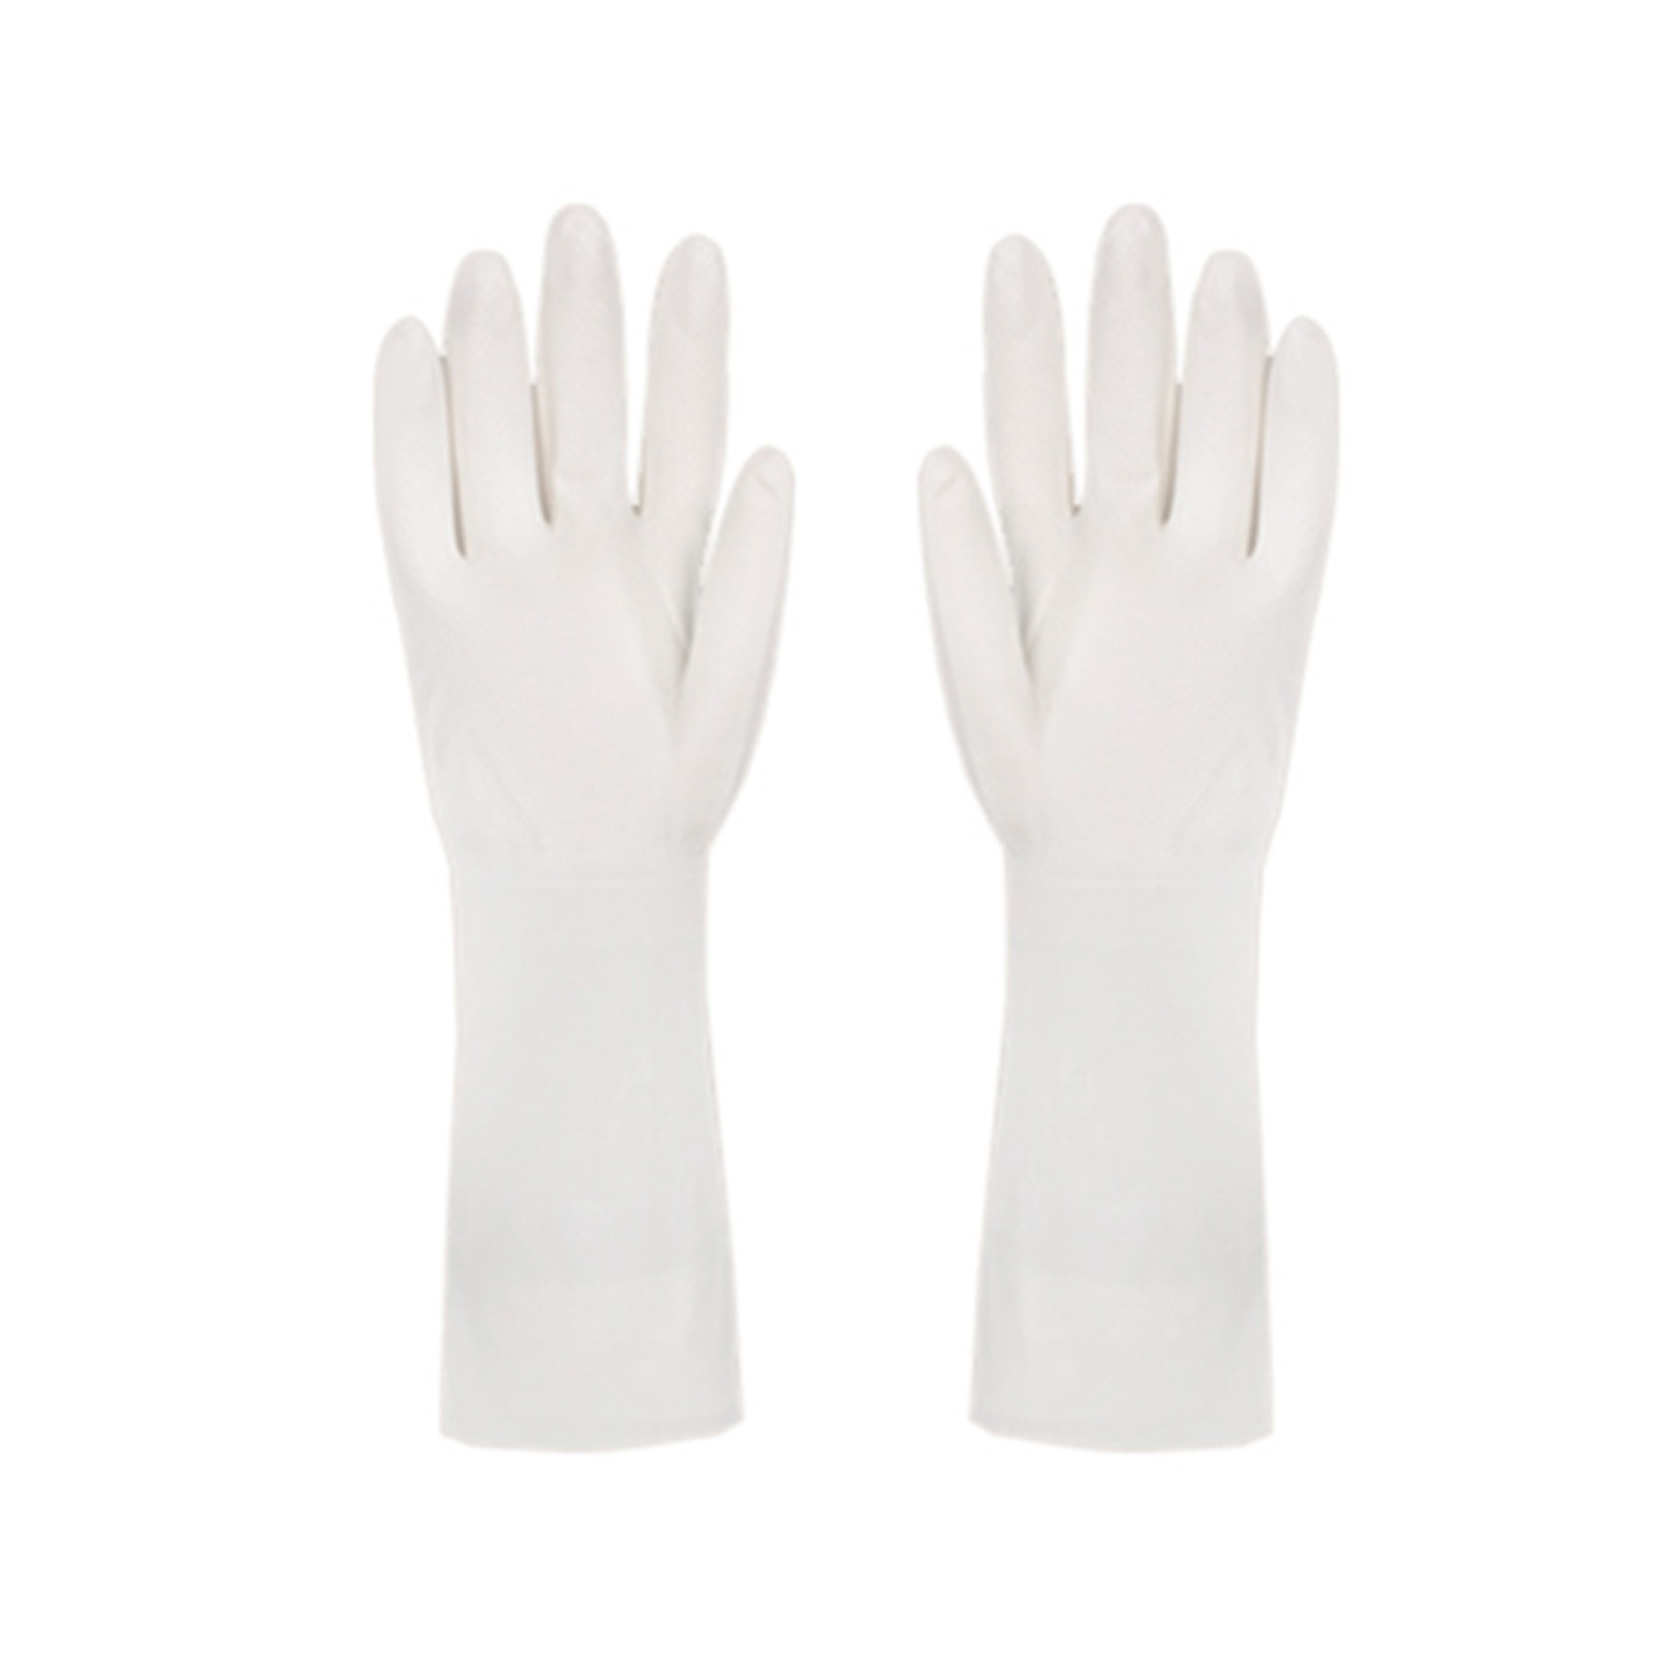 Flexilis Nitrile Gloves Reusable hospitii Purgatio pro coquina Dishwashing